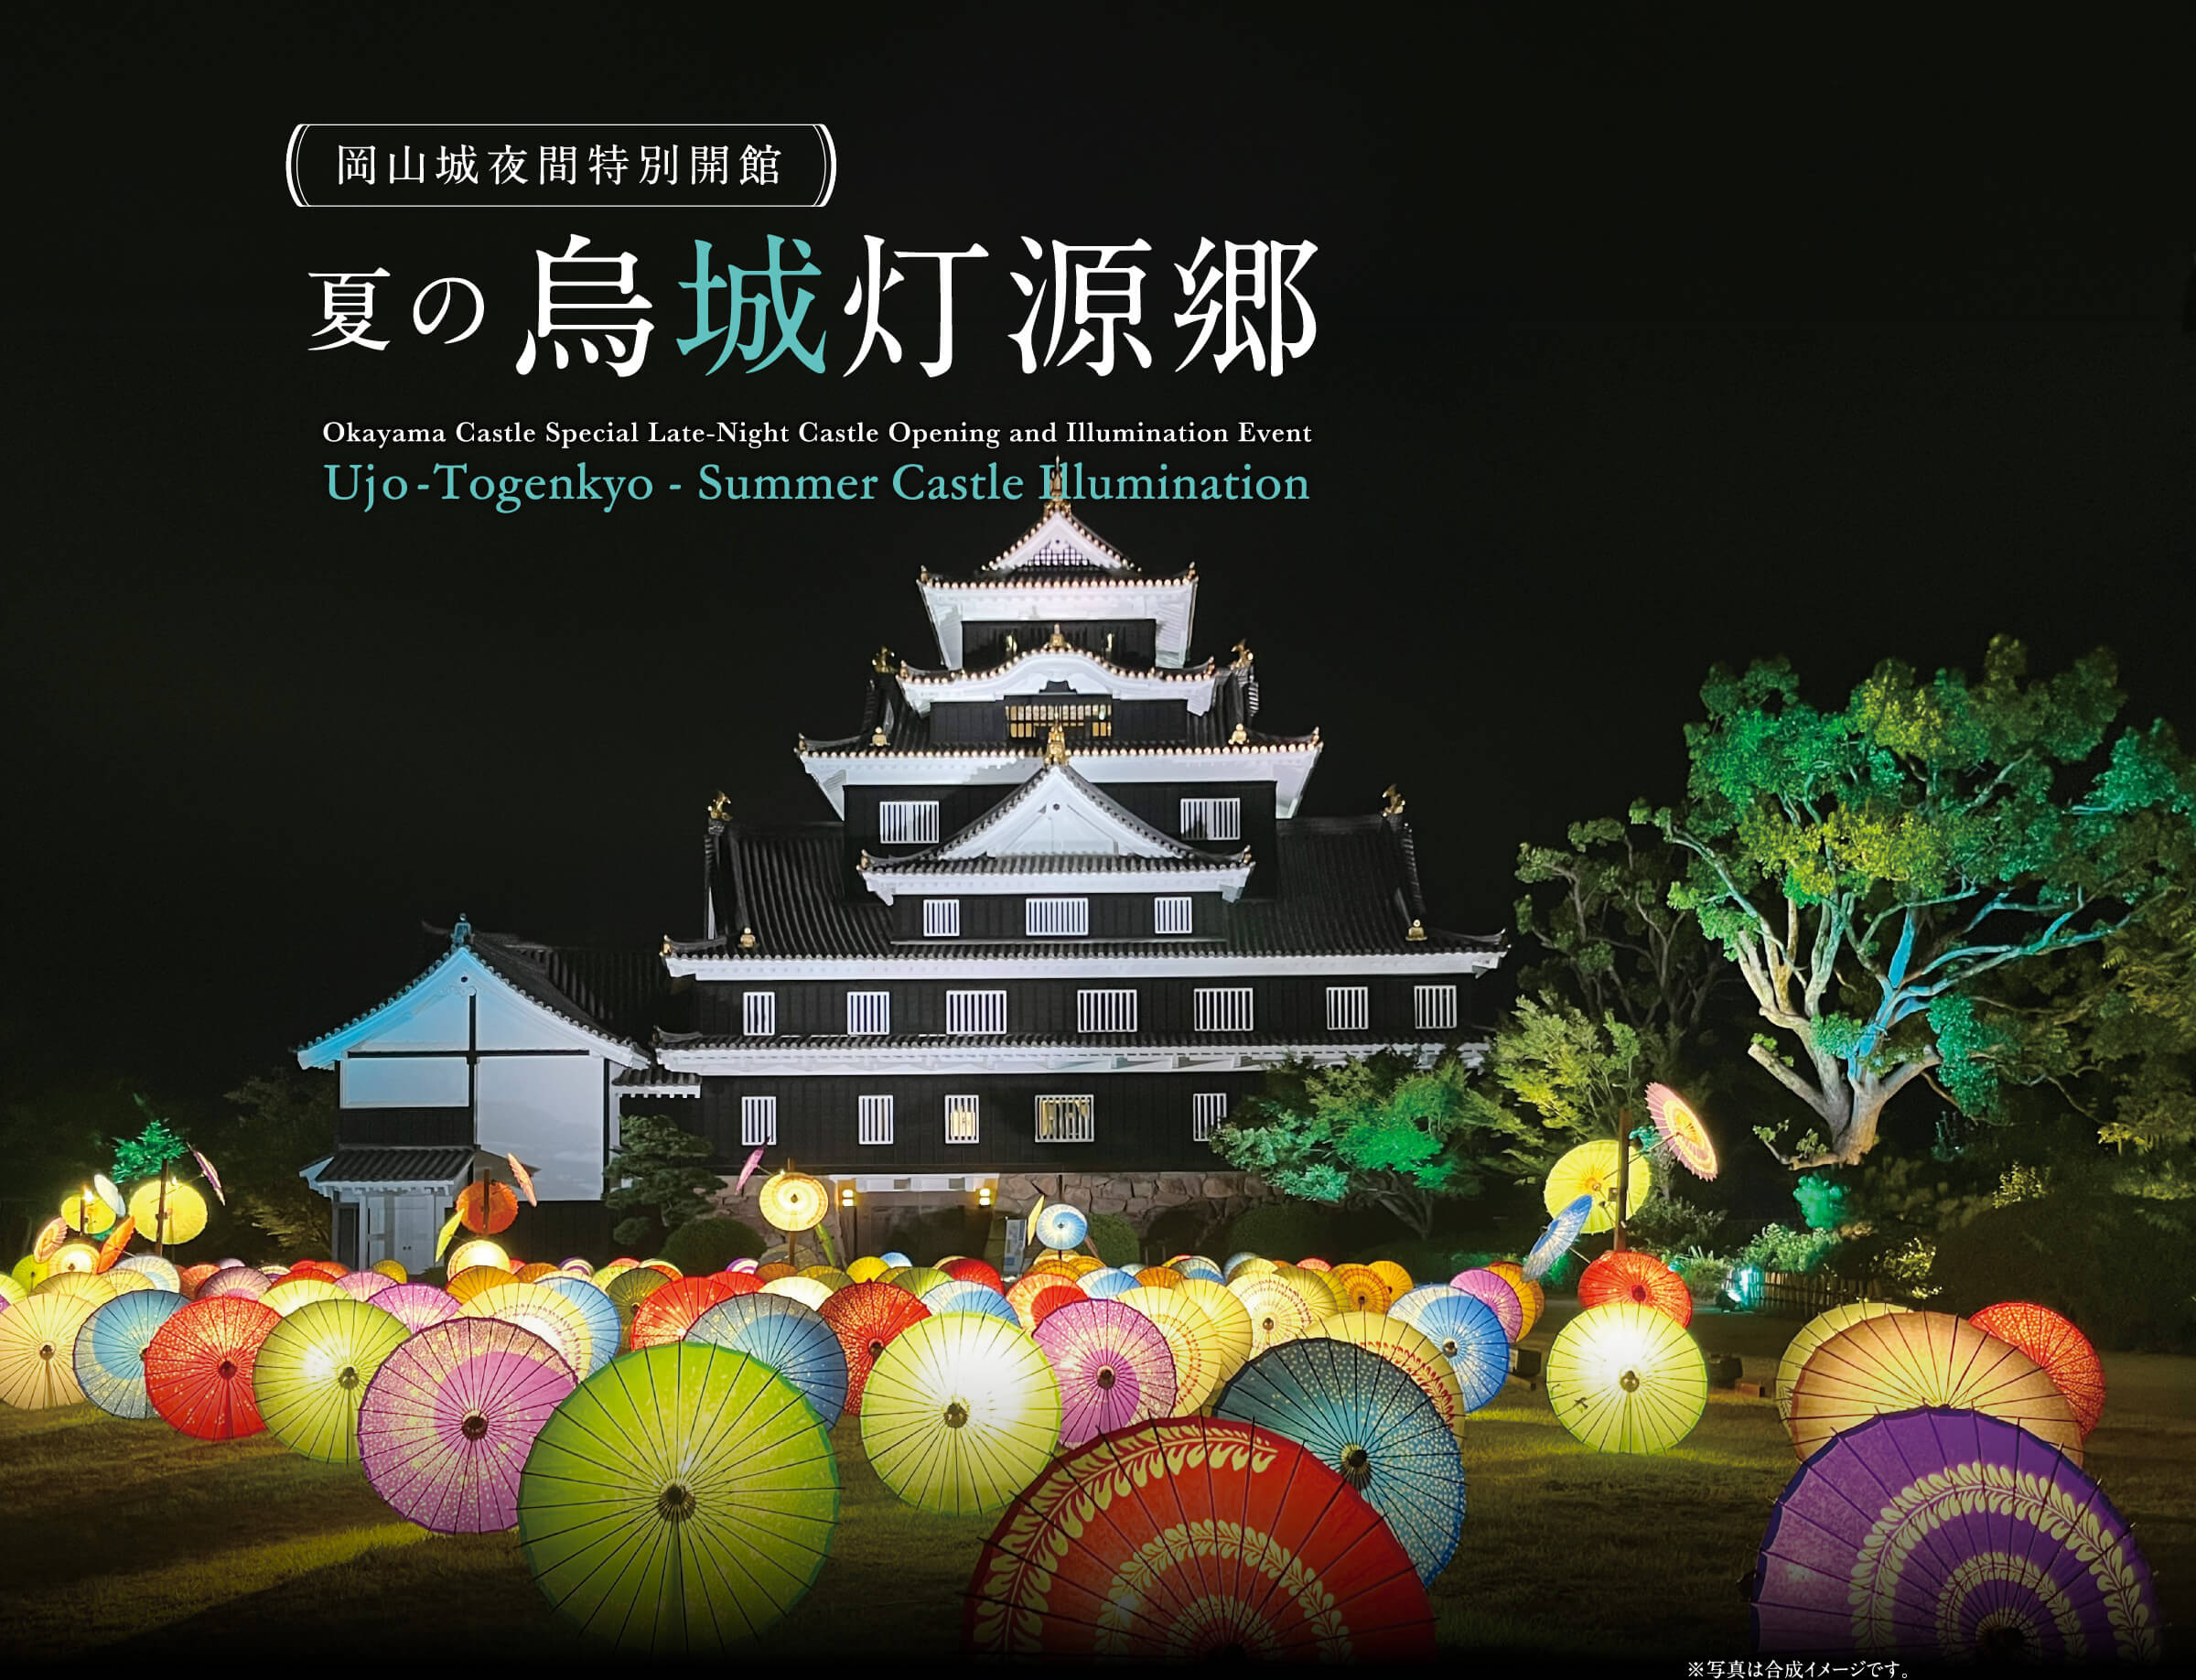 岡山城夜間特別開館 夏の烏城灯源郷 Okayama Castle Special Late-Night Castle Opening and Illumination Event Ujo-Togenkyo - Summer Castle Illumination ※写真は合成イメージです。